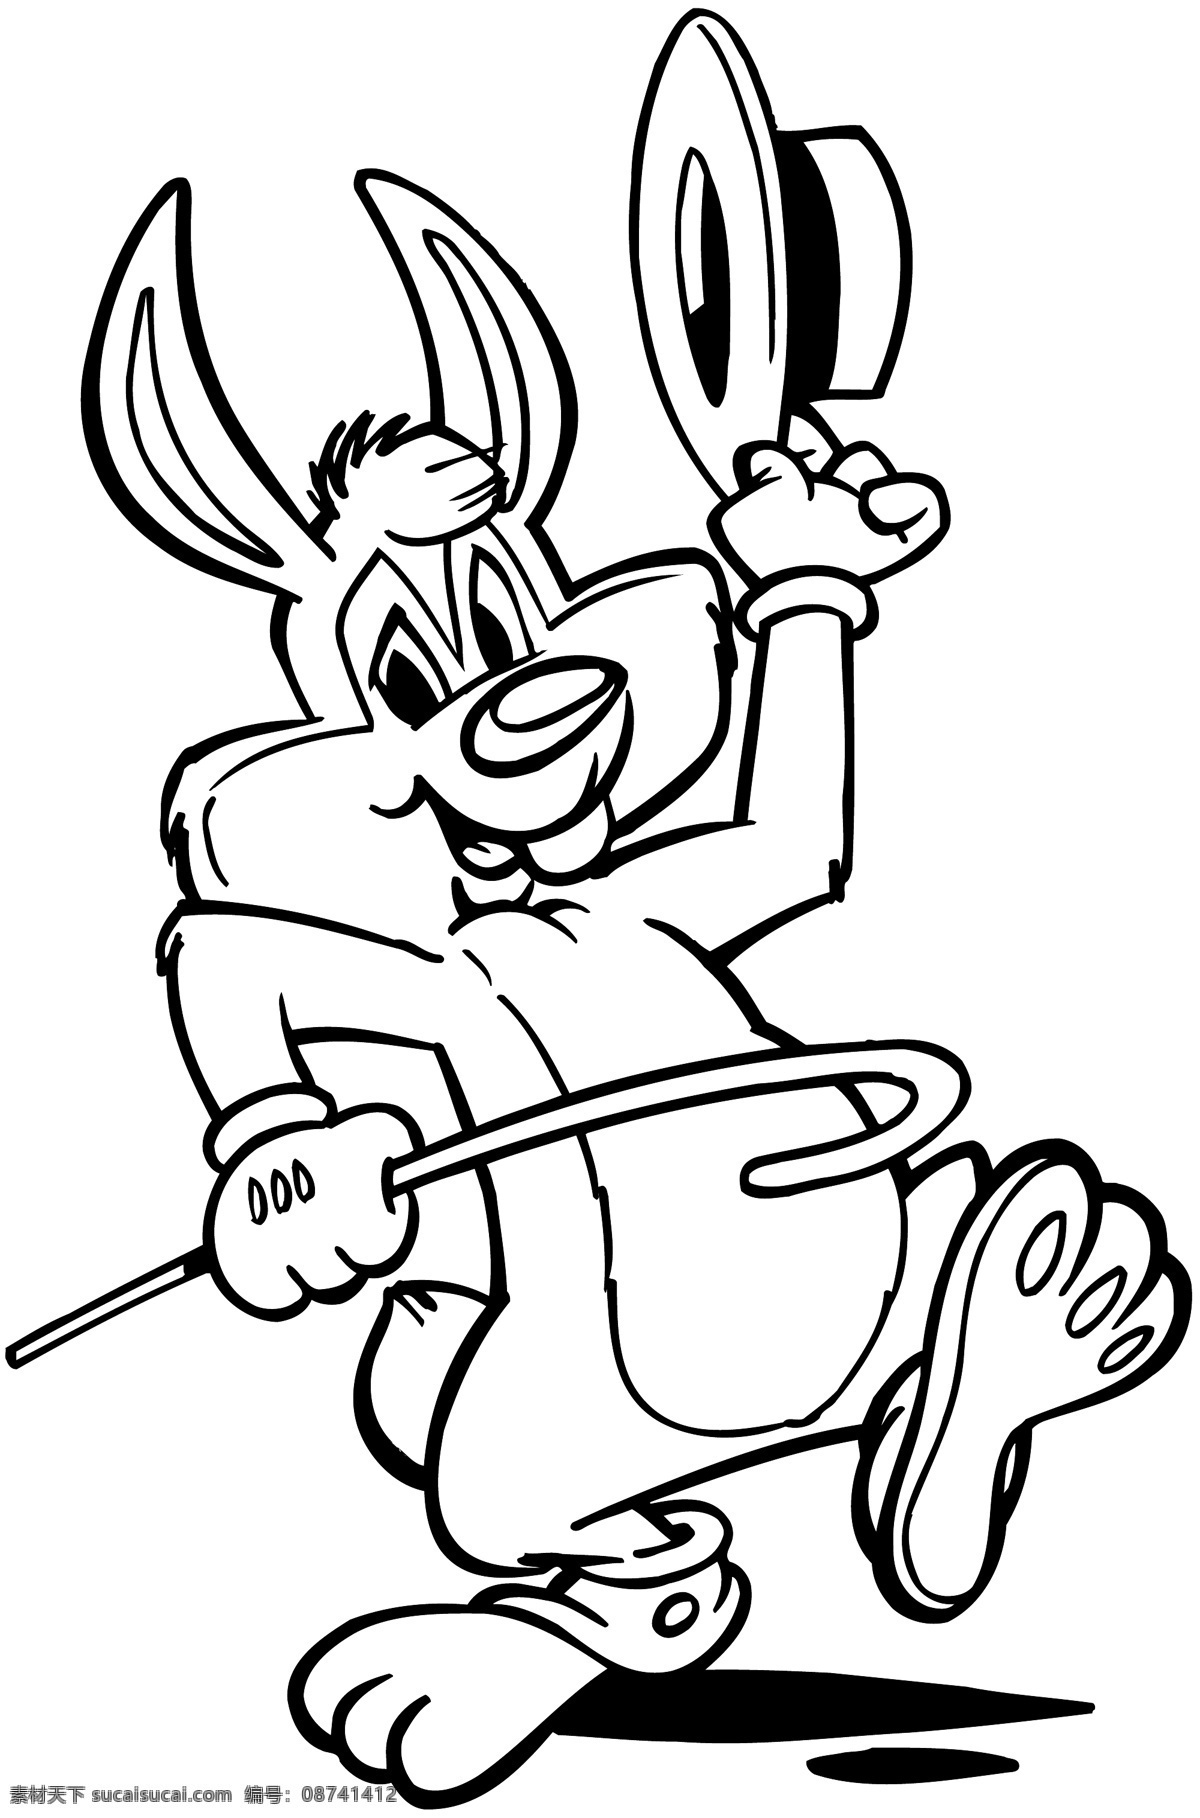 款 黑白 卡通 动物 形象 魔术师兔子 幽冥神视工厂 矢量图 其他矢量 矢量素材 矢量图库